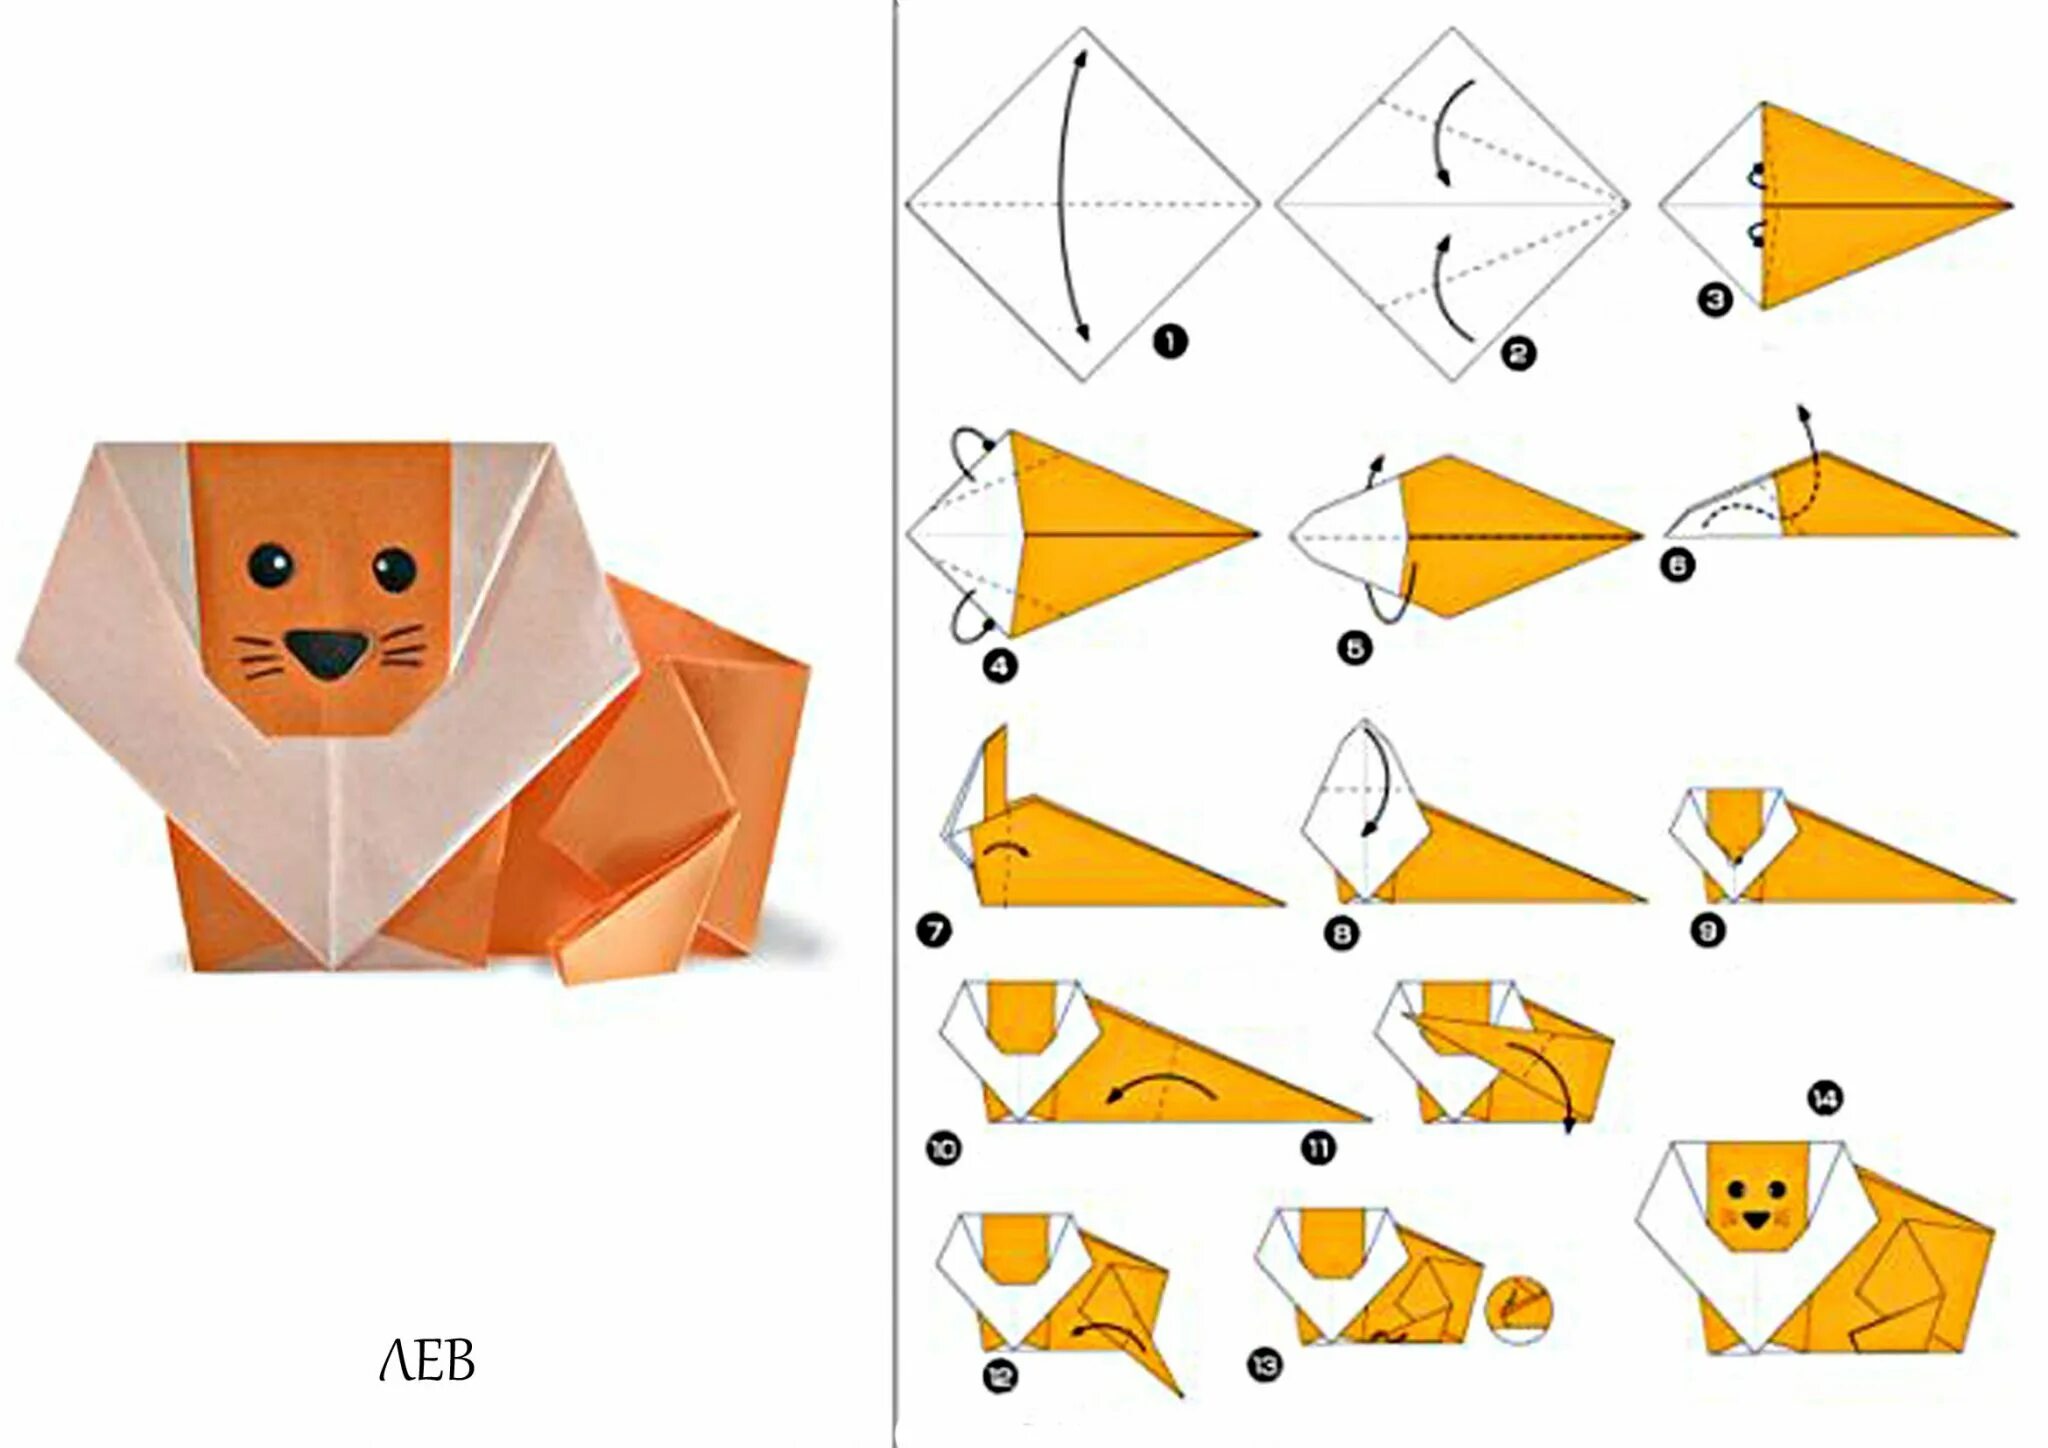 Оригами для 10 лет. Оригами животных из бумаги для детей для начинающих. Оригами фигурки животных из бумаги схемы для начинающих. Оригами Лев из бумаги для детей пошаговая инструкция. Оригами простые схемы для детей начинающих из бумаги.